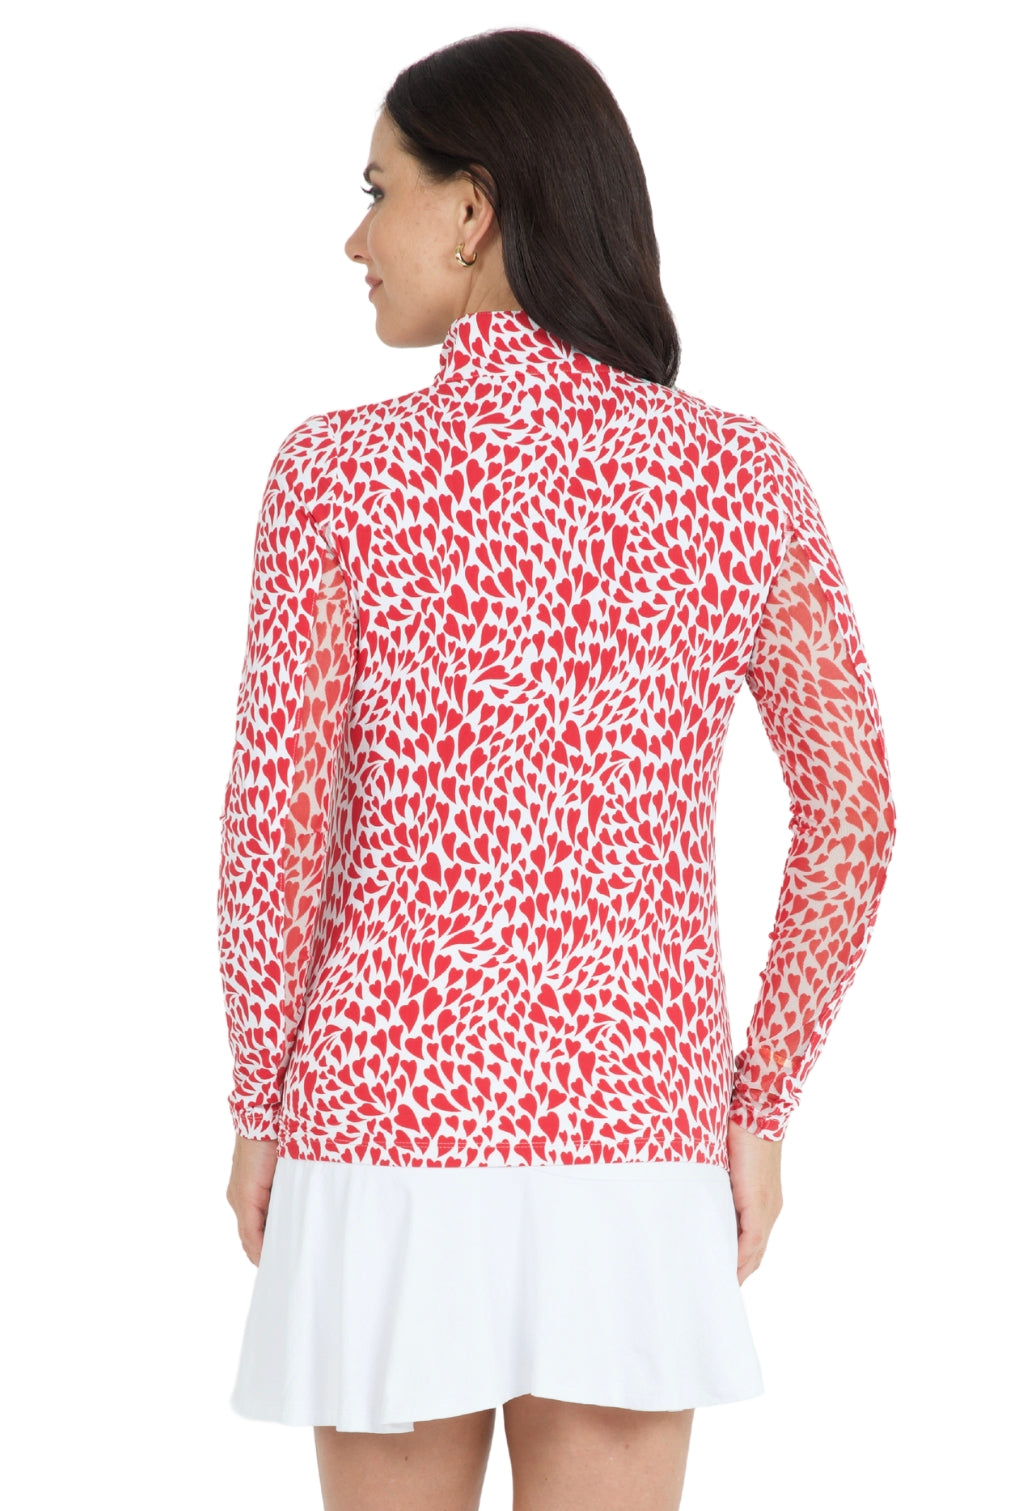 IBKÜL - Davina Print Long Sleeve Mock Neck Top – 10658 - Color: Red/White